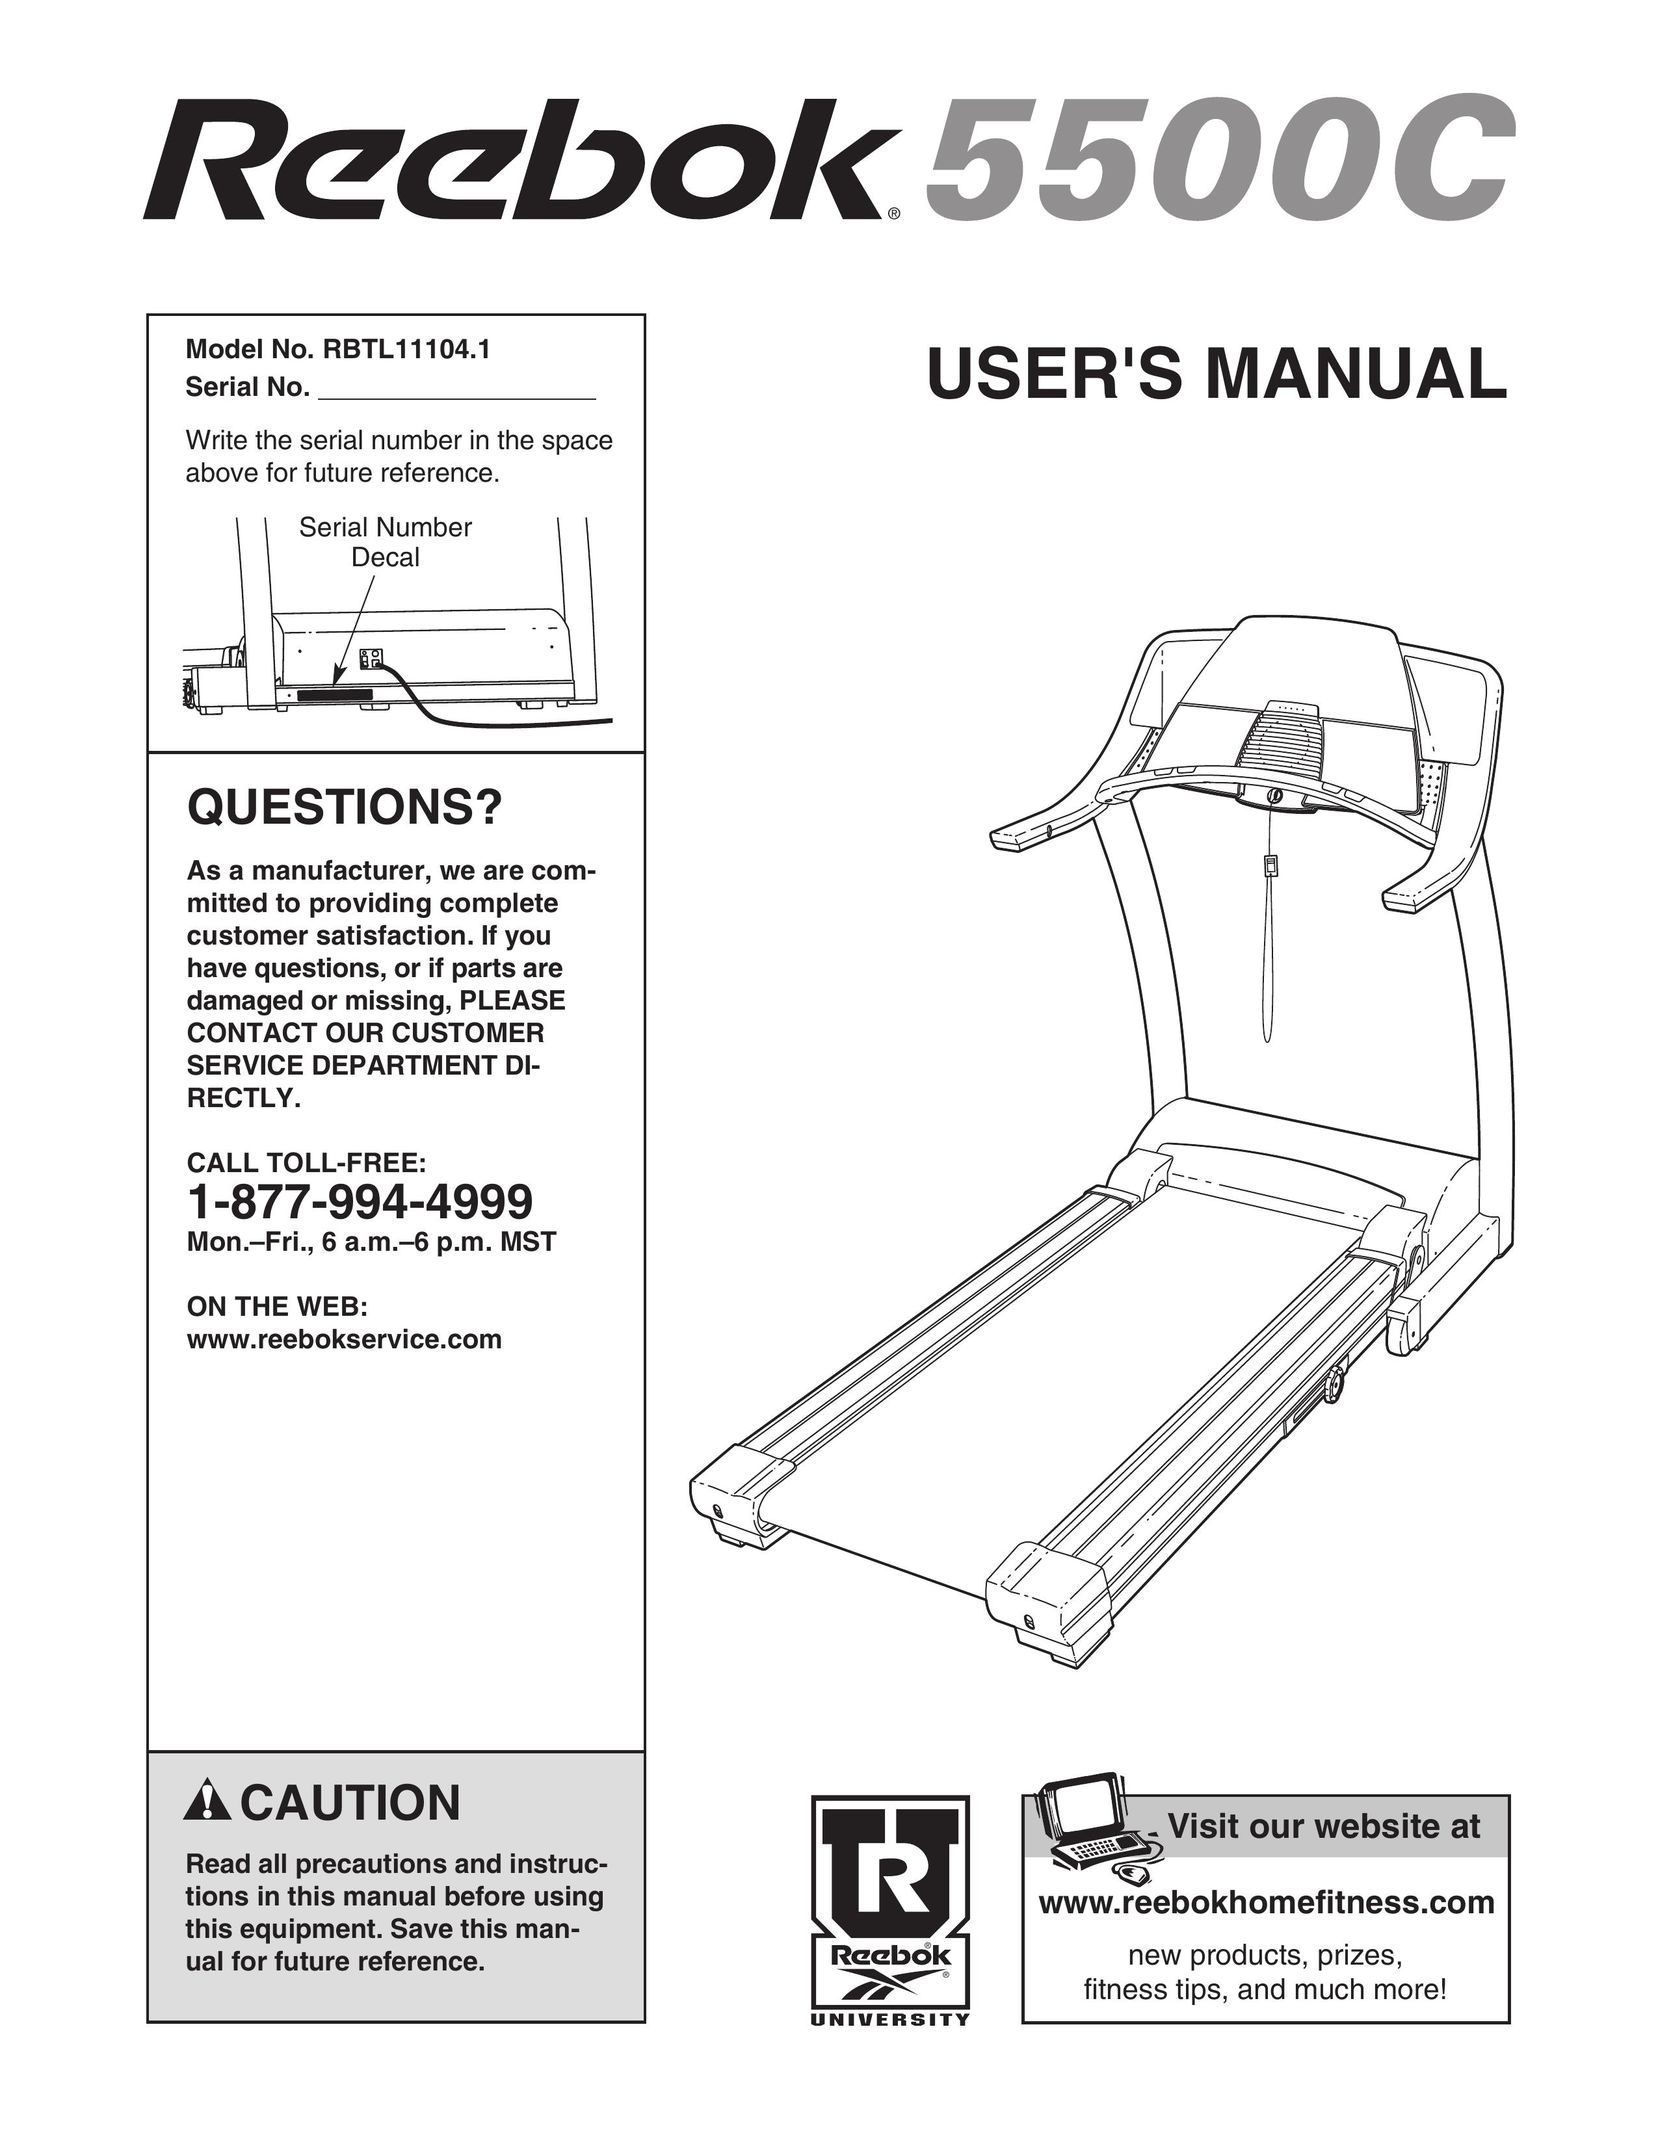 Reebok Fitness RBTL11104.1 Treadmill User Manual